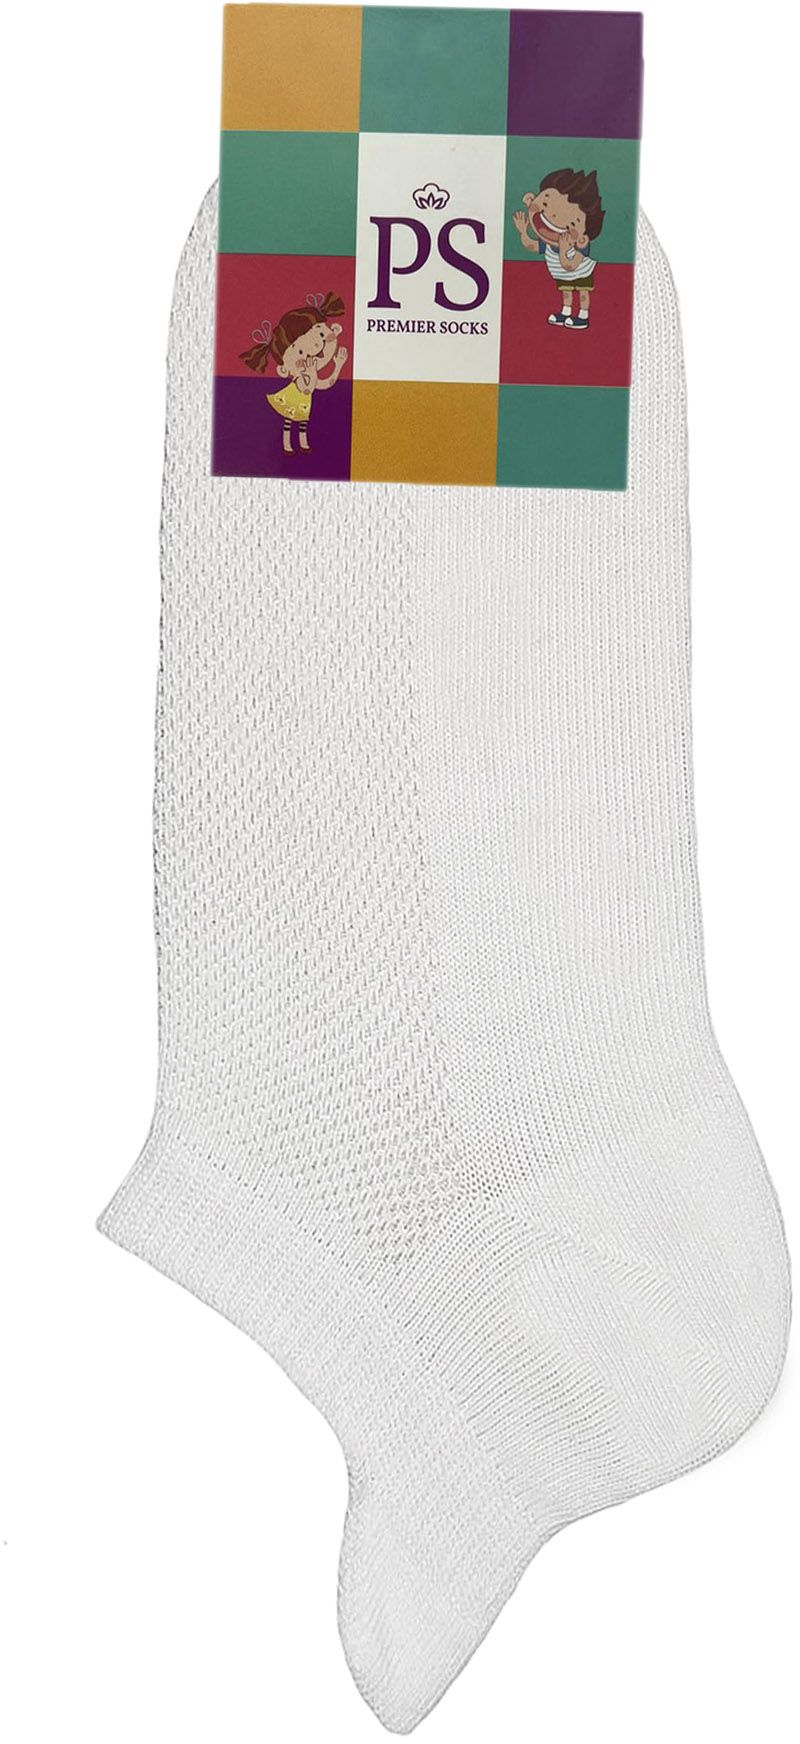 Шкарпетки дитячі Premier Socks 22-24 1 пара білі (4820163319605)фото2